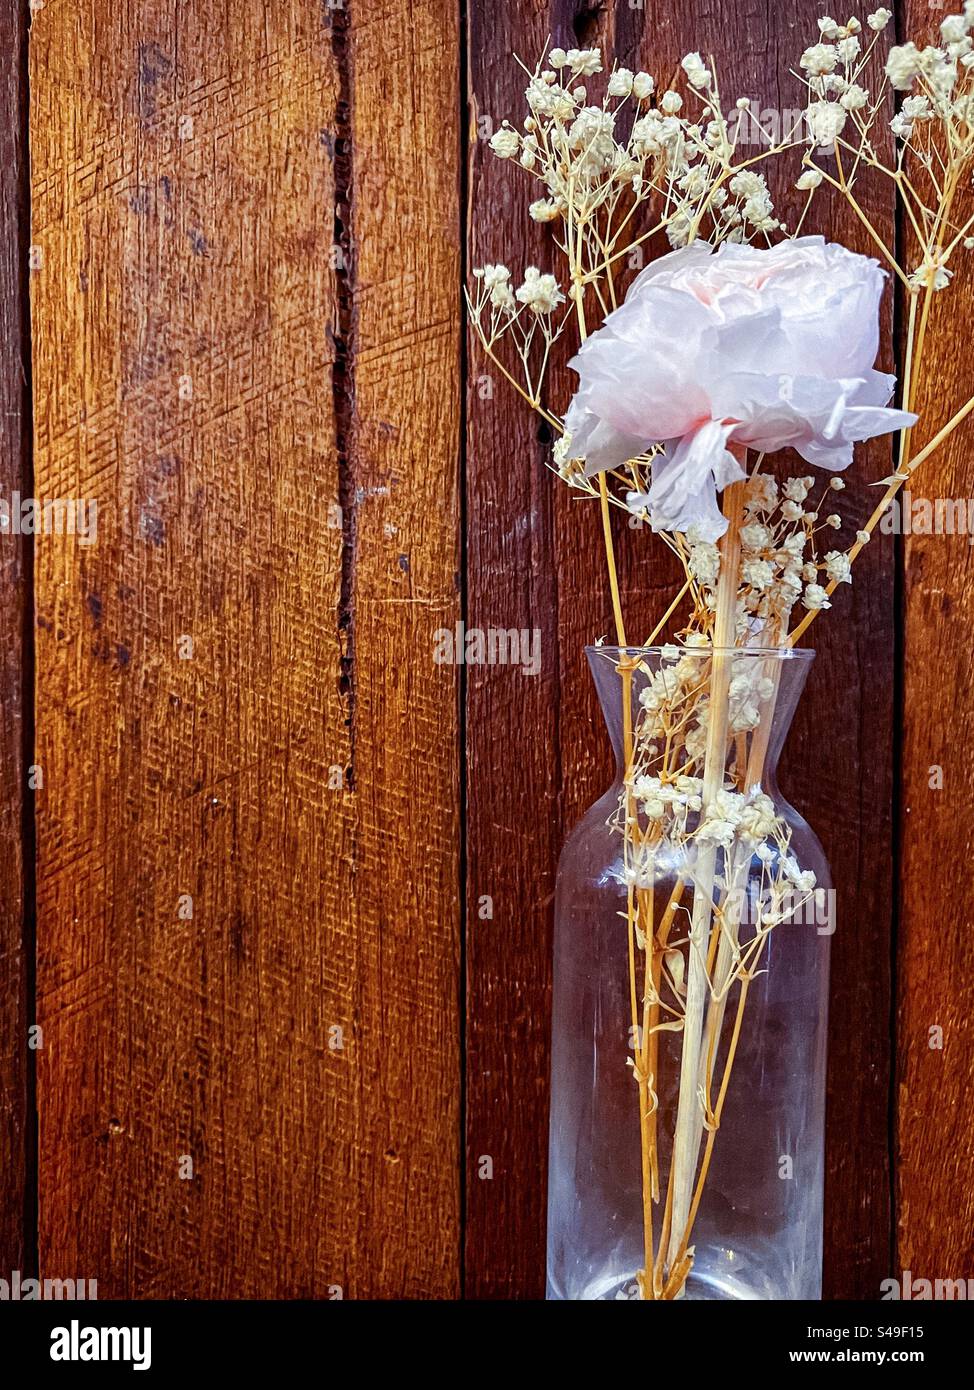 Einzelne blassrosa Rose und getrocknete weiße Blumen in einer Glasvase auf gebeiztem Holzhintergrund. Cottagecore-Ästhetik. Vintage-Style. Stillleben. Stockfoto